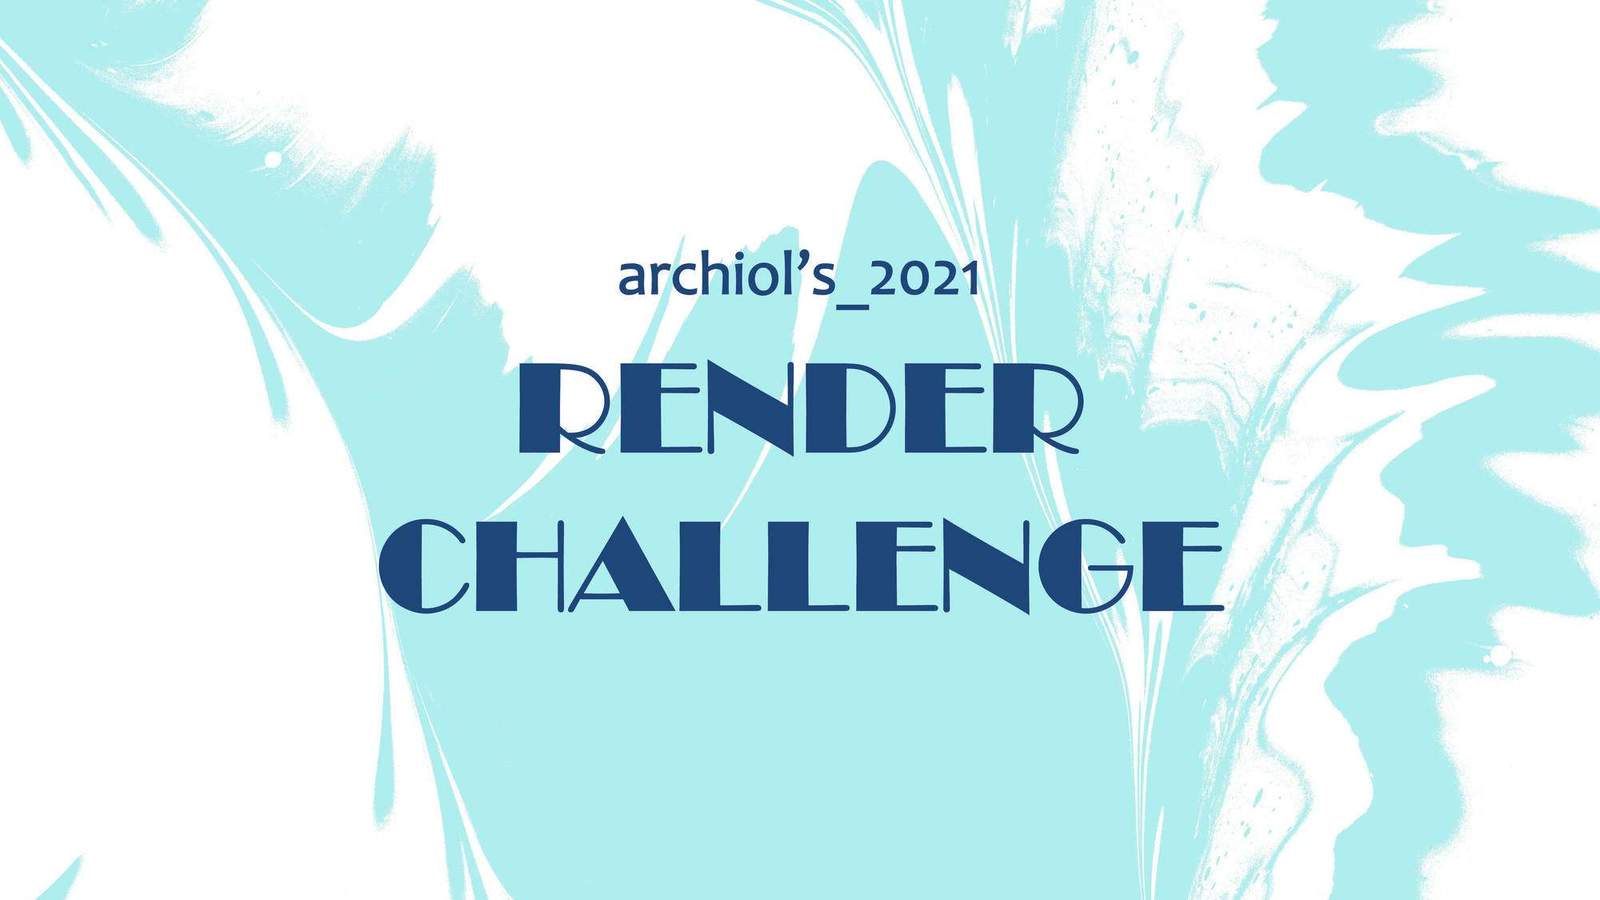 Archiol’s 2021 – RENDER CHALLENGE